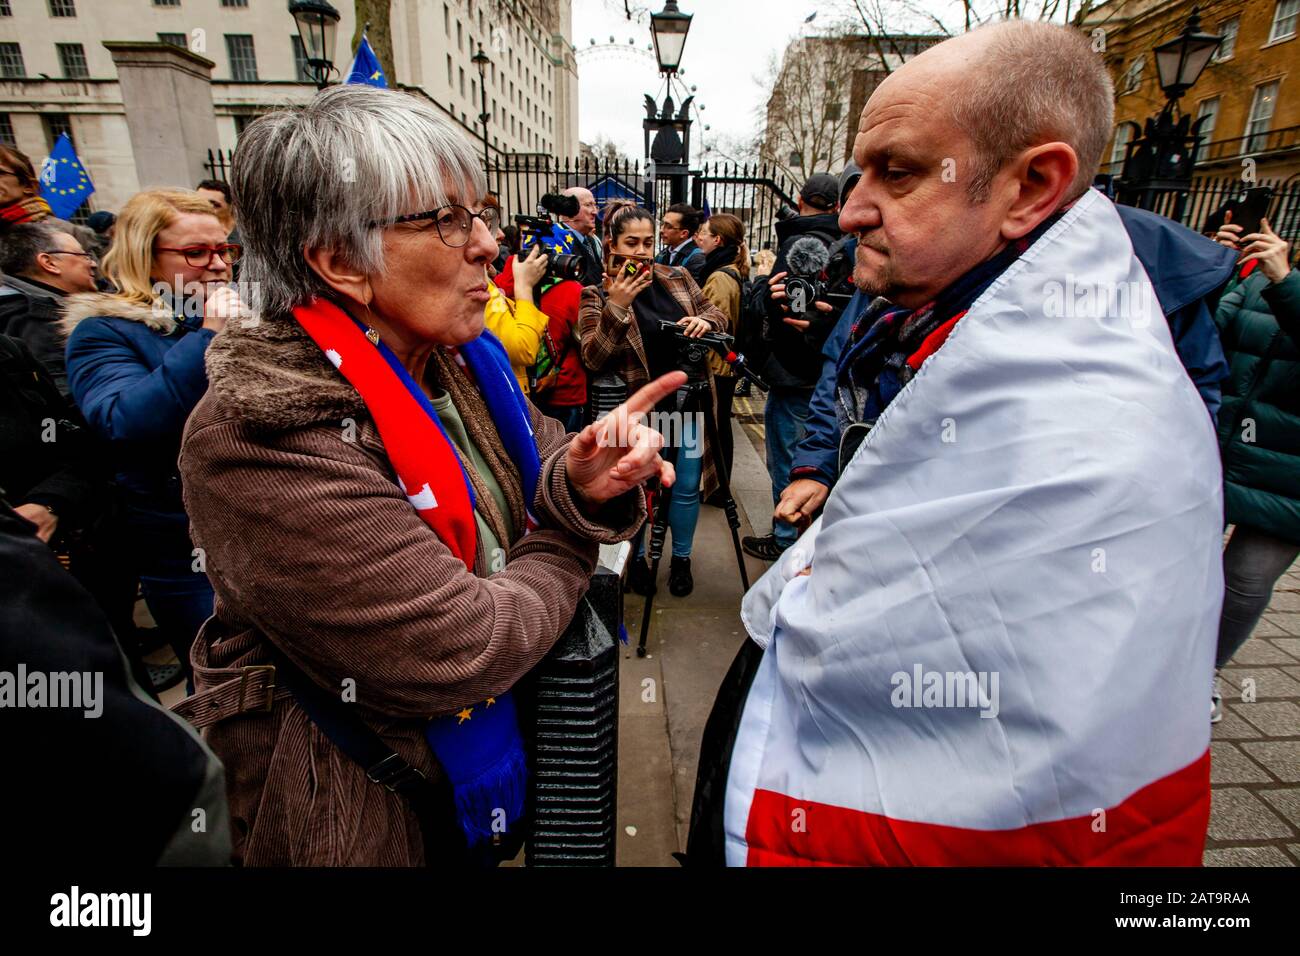 Londra, Regno Unito. 31st Gen 2020. Un confronto tra un sostenitore rimasto e Brexit vicino a Parliament Square, Londra mentre i sostenitori della Brexit si riuniscono per celebrare la Gran Bretagna che lascia l’UE. Credito: Grant Rooney/Alamy Live News Foto Stock